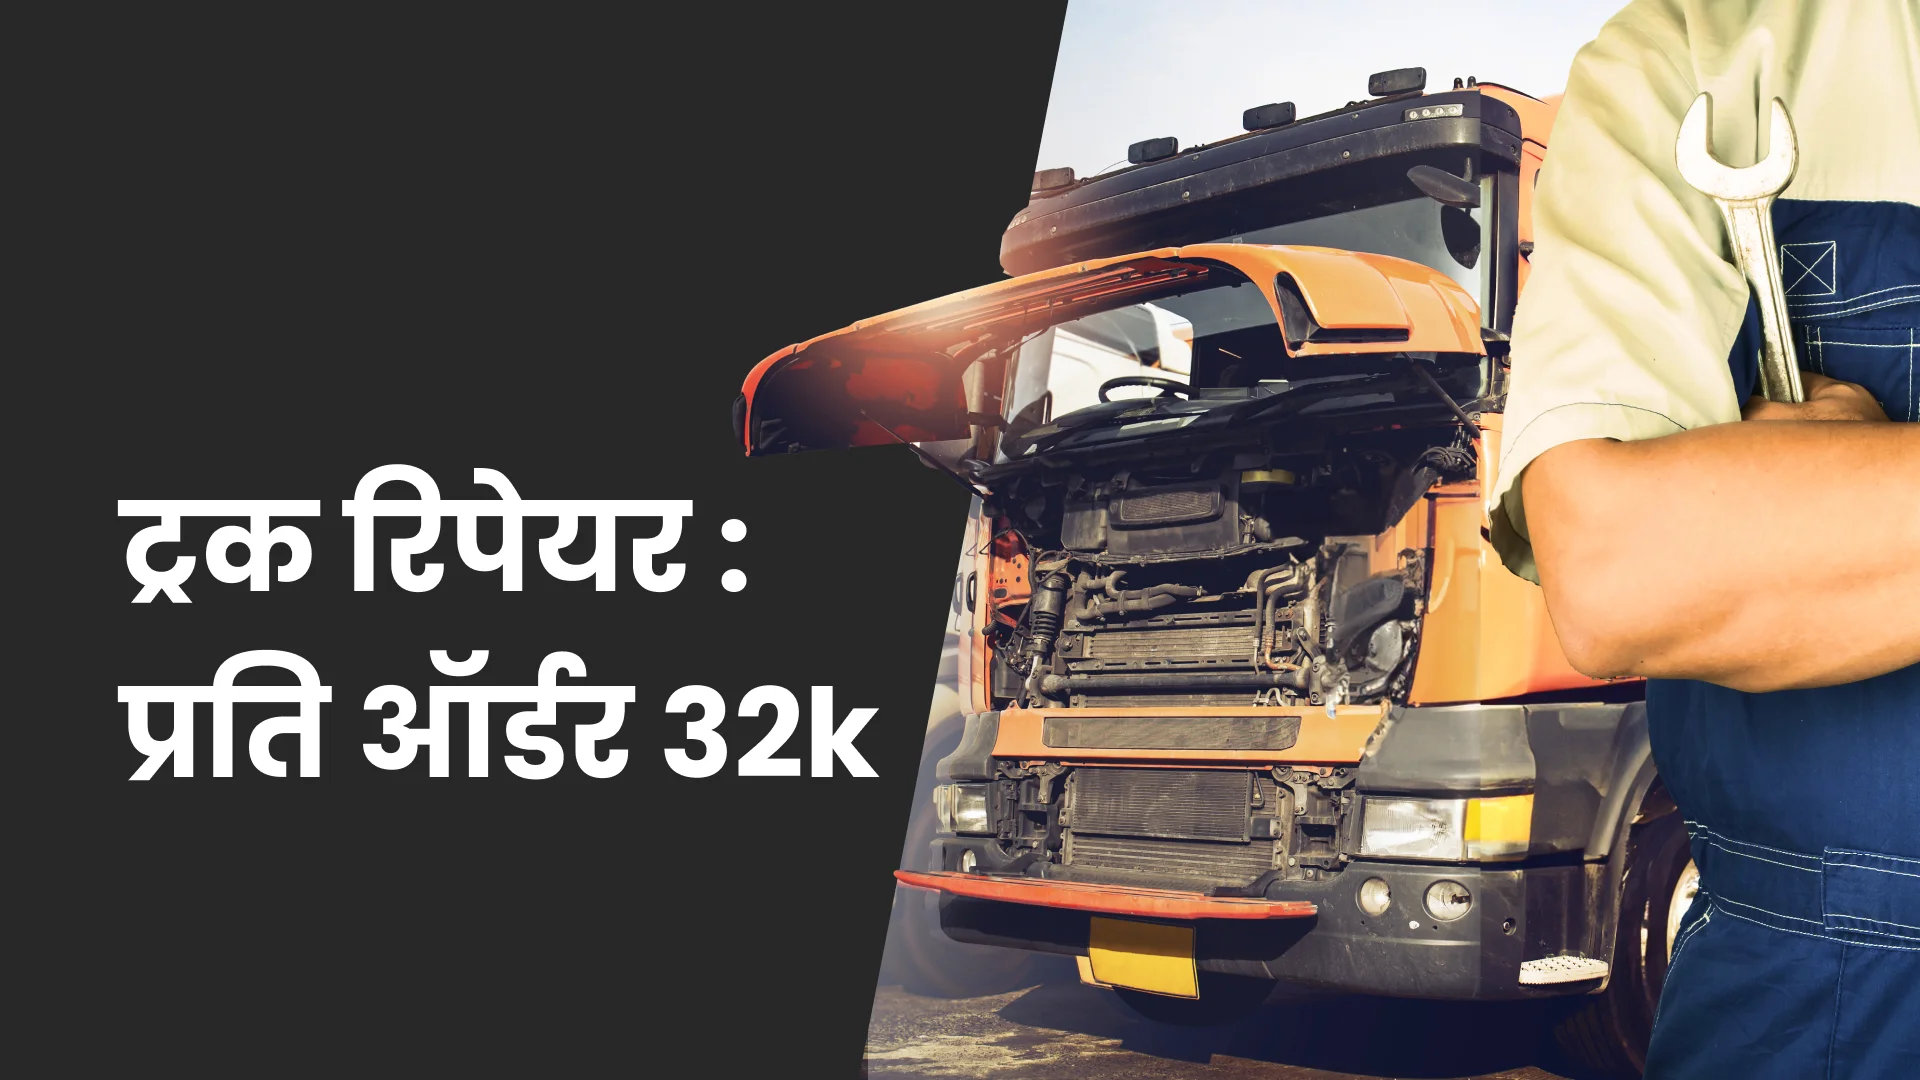 कोर्स ट्रेलर: ट्रक रिपेयर बिज़नेस: प्रति ऑर्डर 32k तक कमाएं। अधिक जानने के लिए देखें।